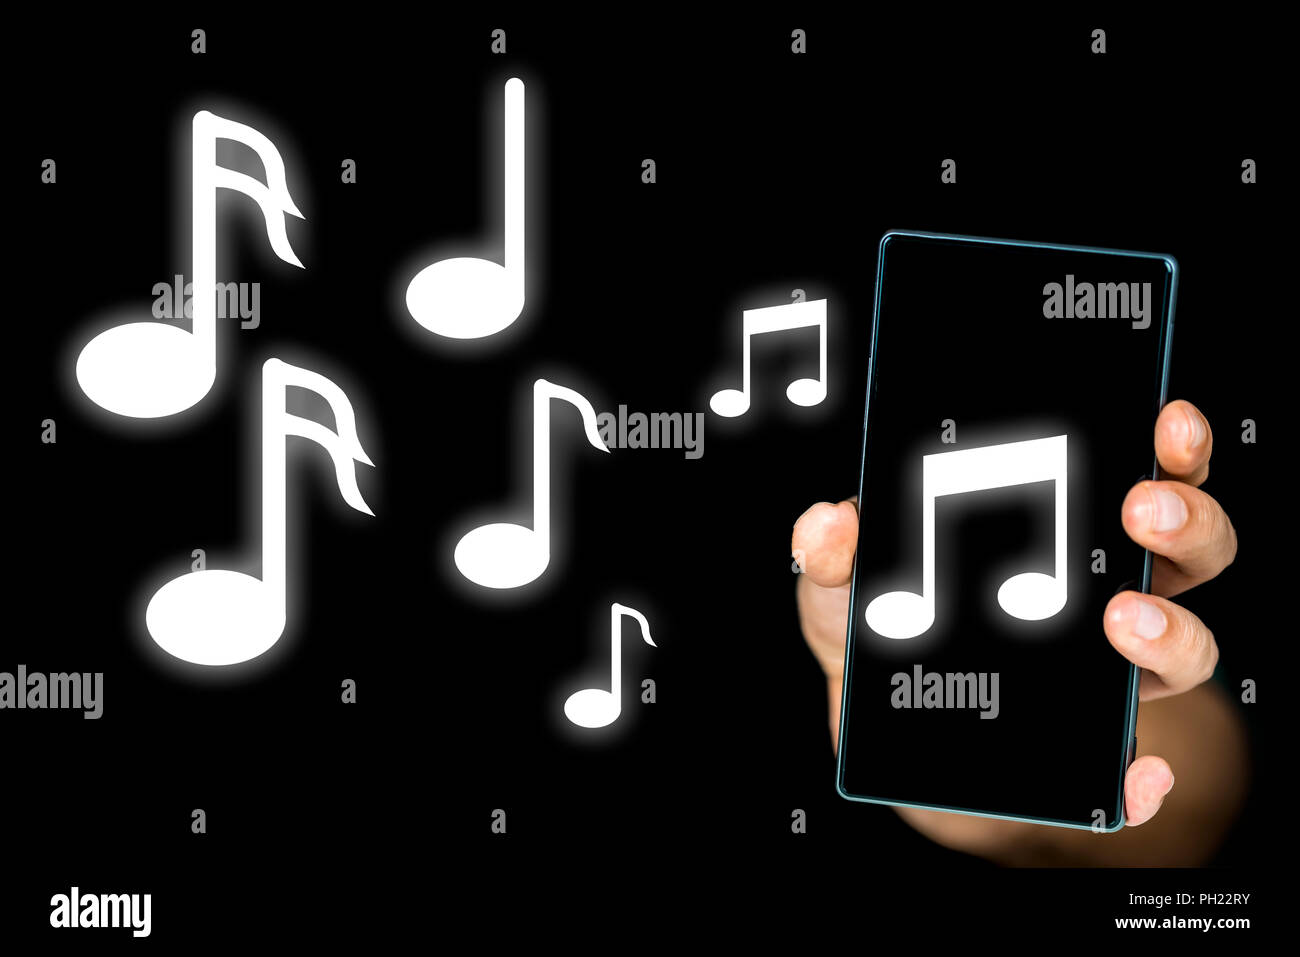 Image conceptuelle de l'émission de notes de musique à partir d'un lecteur  de musique mp3 ou des notes décrivant une alarme sonore encore de sonnerie  sur un téléphone mobile Photo Stock -